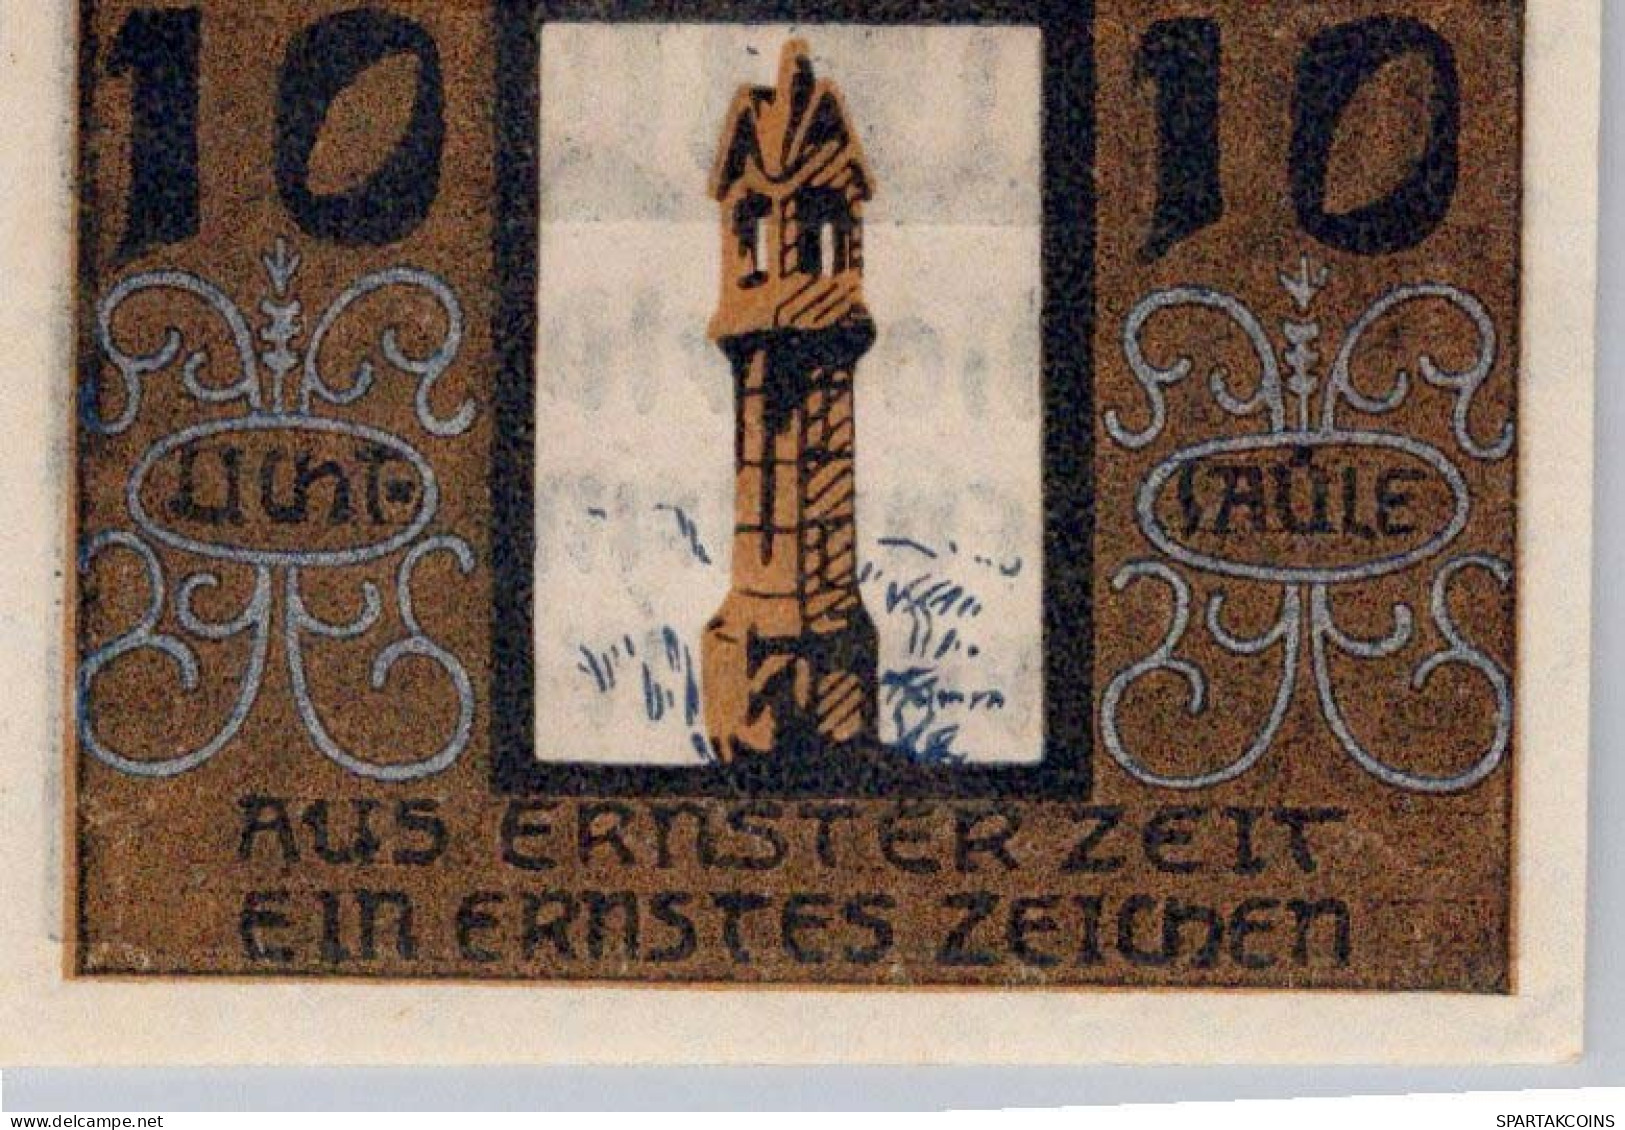 10 HELLER 1920 Stadt NIEDERWALDKIRCHEN Oberösterreich Österreich UNC Österreich #PH456 - [11] Local Banknote Issues